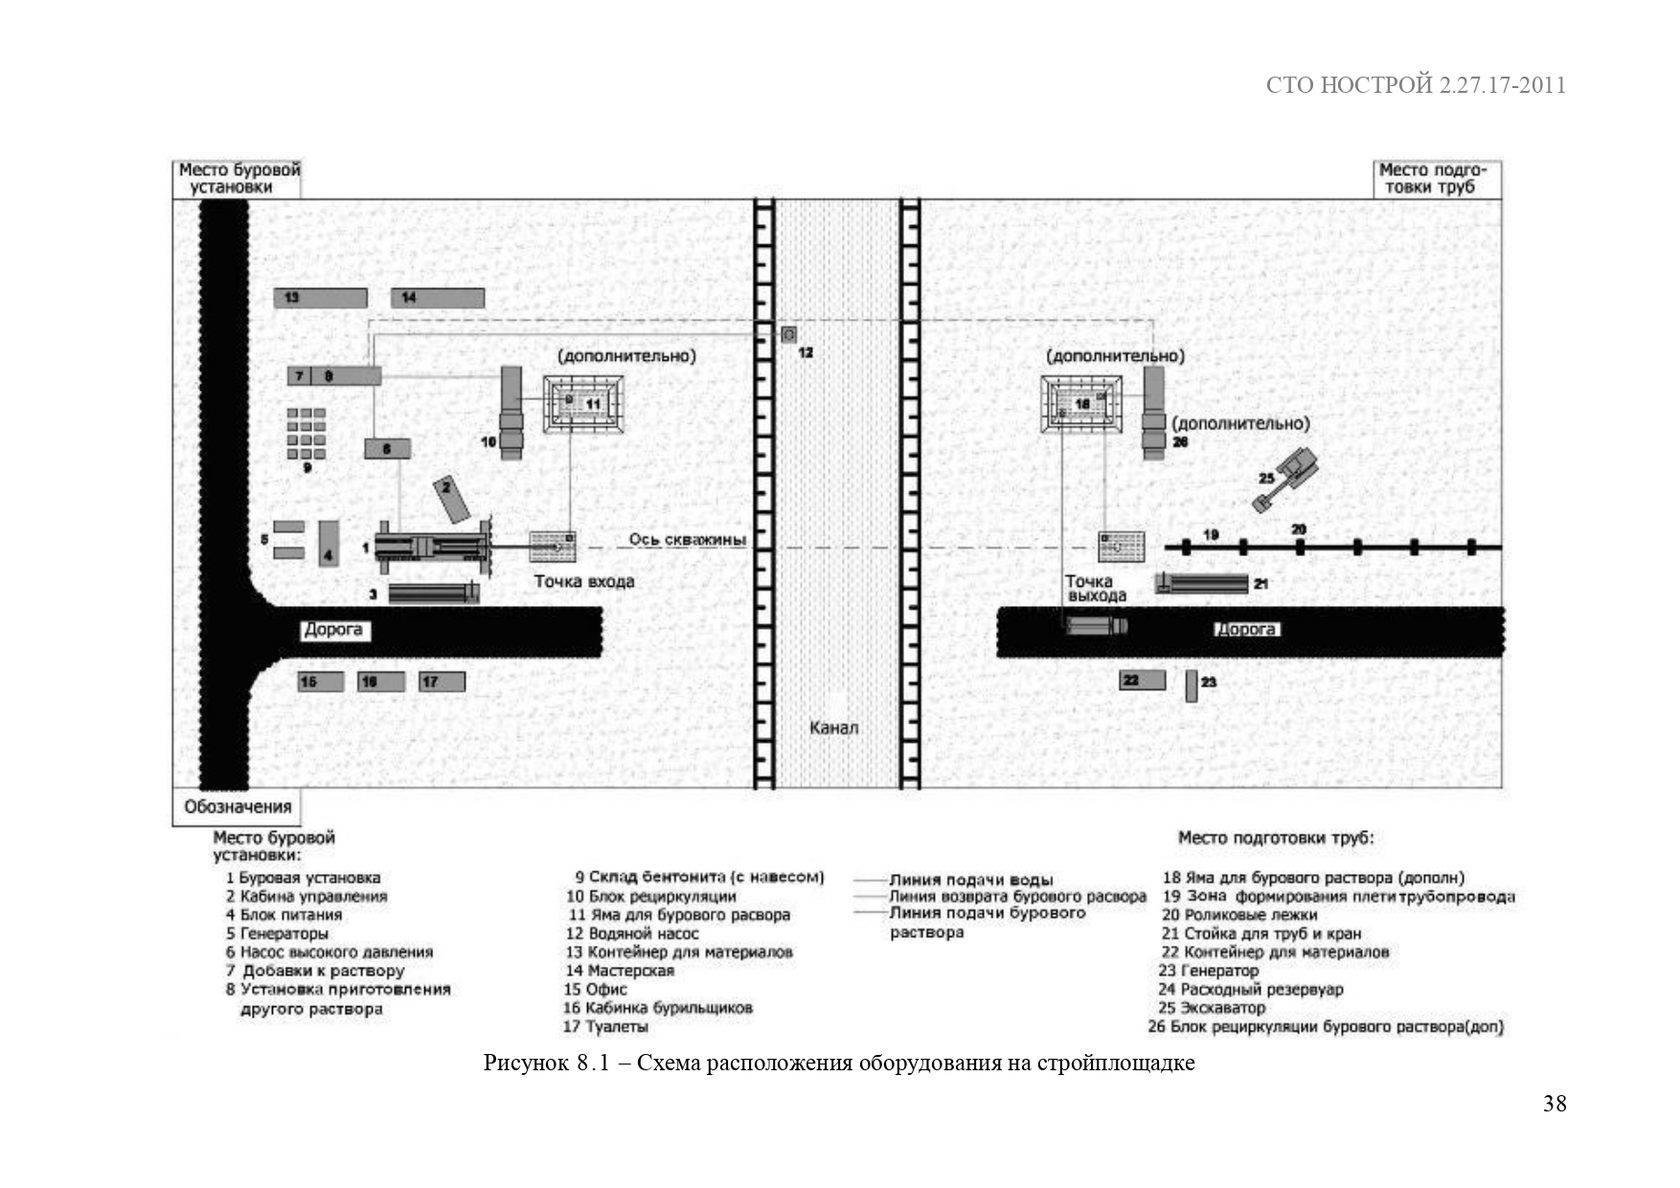 Схема размещения оборудование на площадке ГНБ